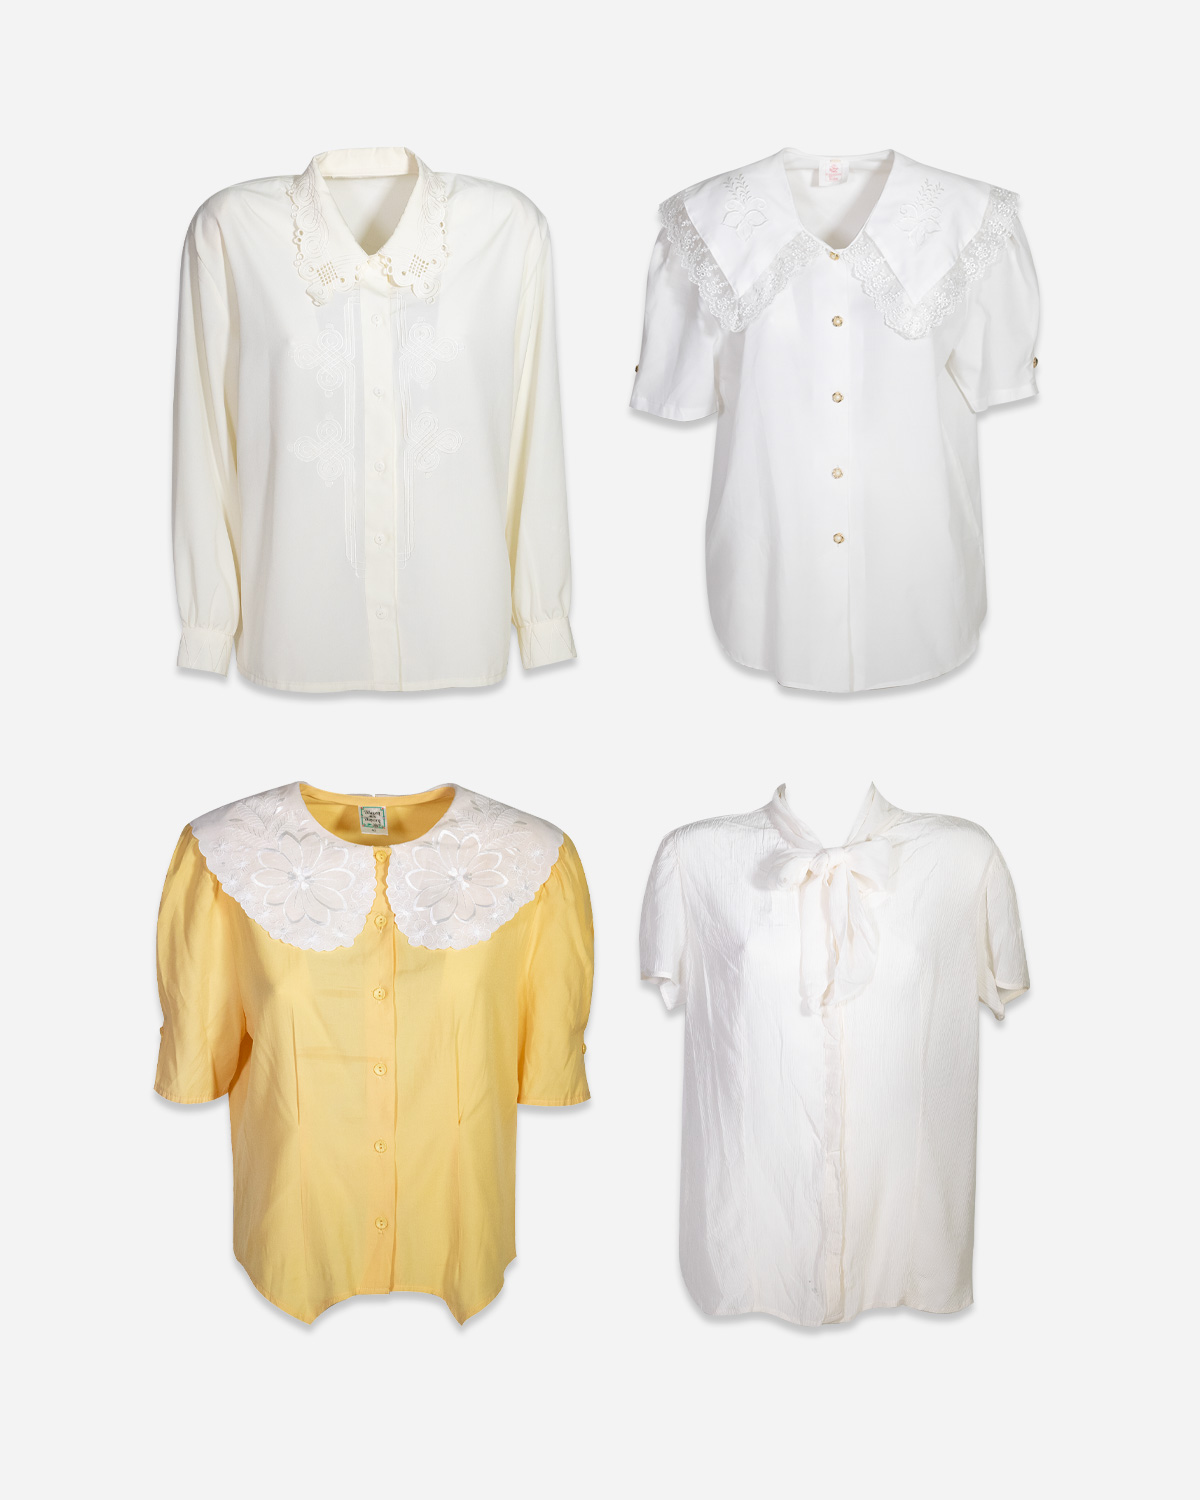 Romantic vintage shirts: 4 pieces